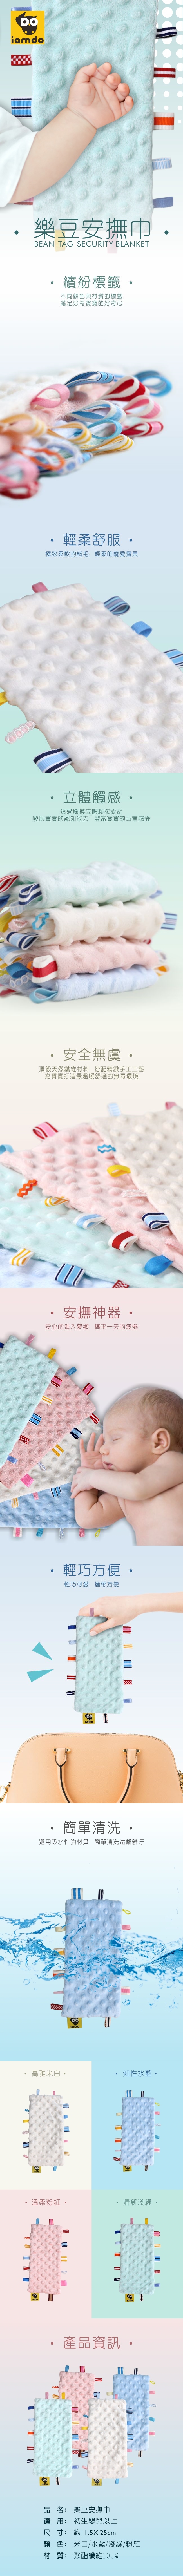 PUKU藍色企鵝-樂豆安撫巾14*24cm(米白/水藍/粉紅/淺綠)P26611